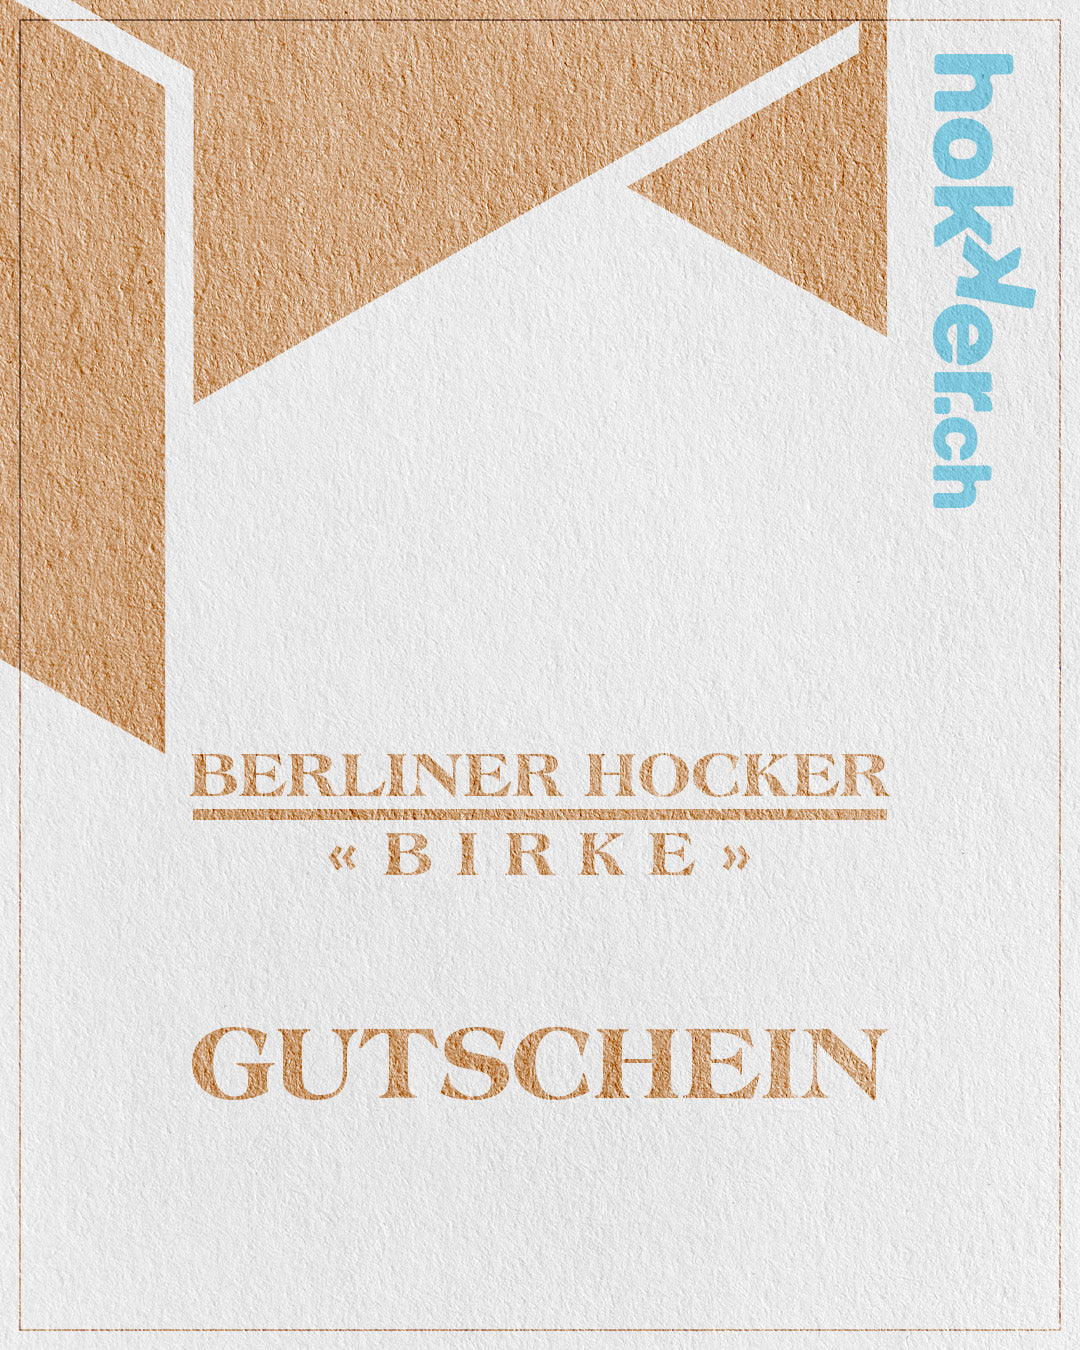 Gutschein Berliner Hocker - Birke